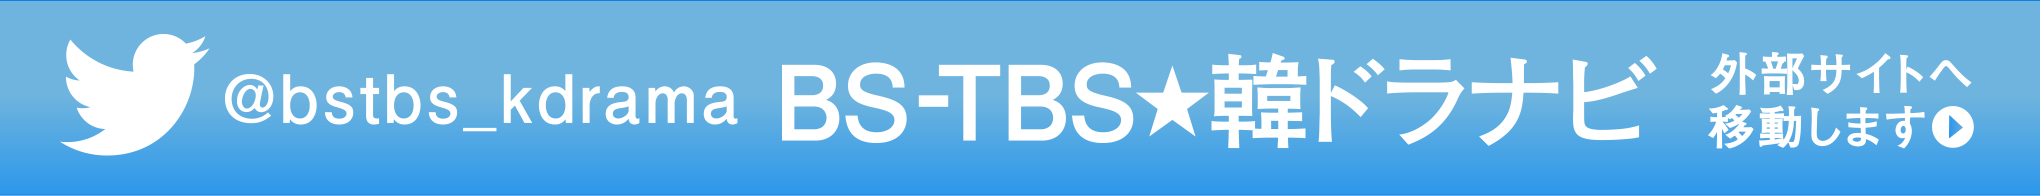 BS-TBS★韓ドラナビ